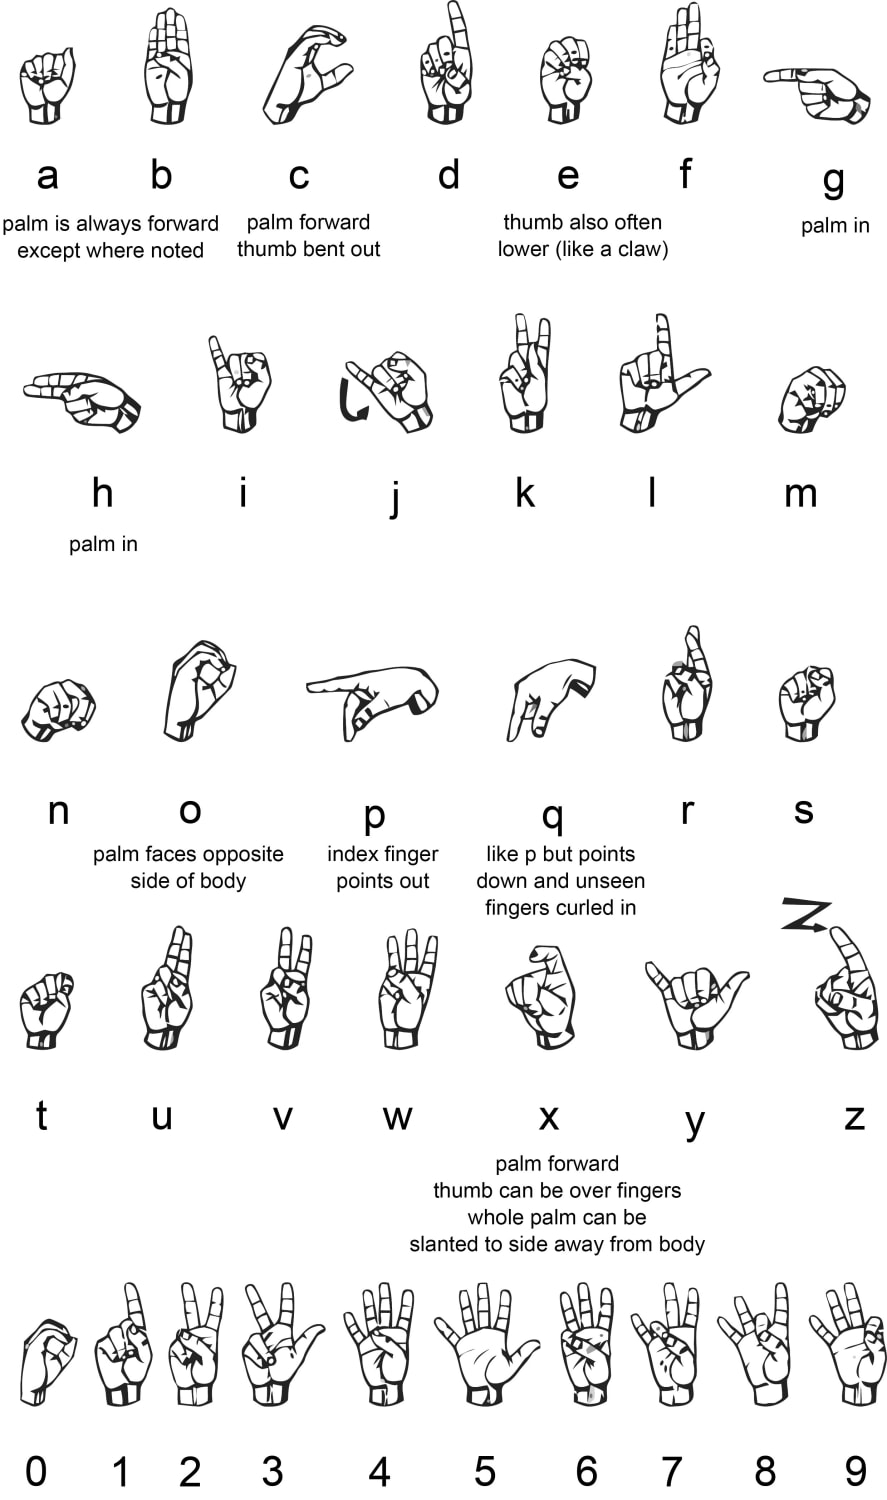 American Sign Language(ASL)